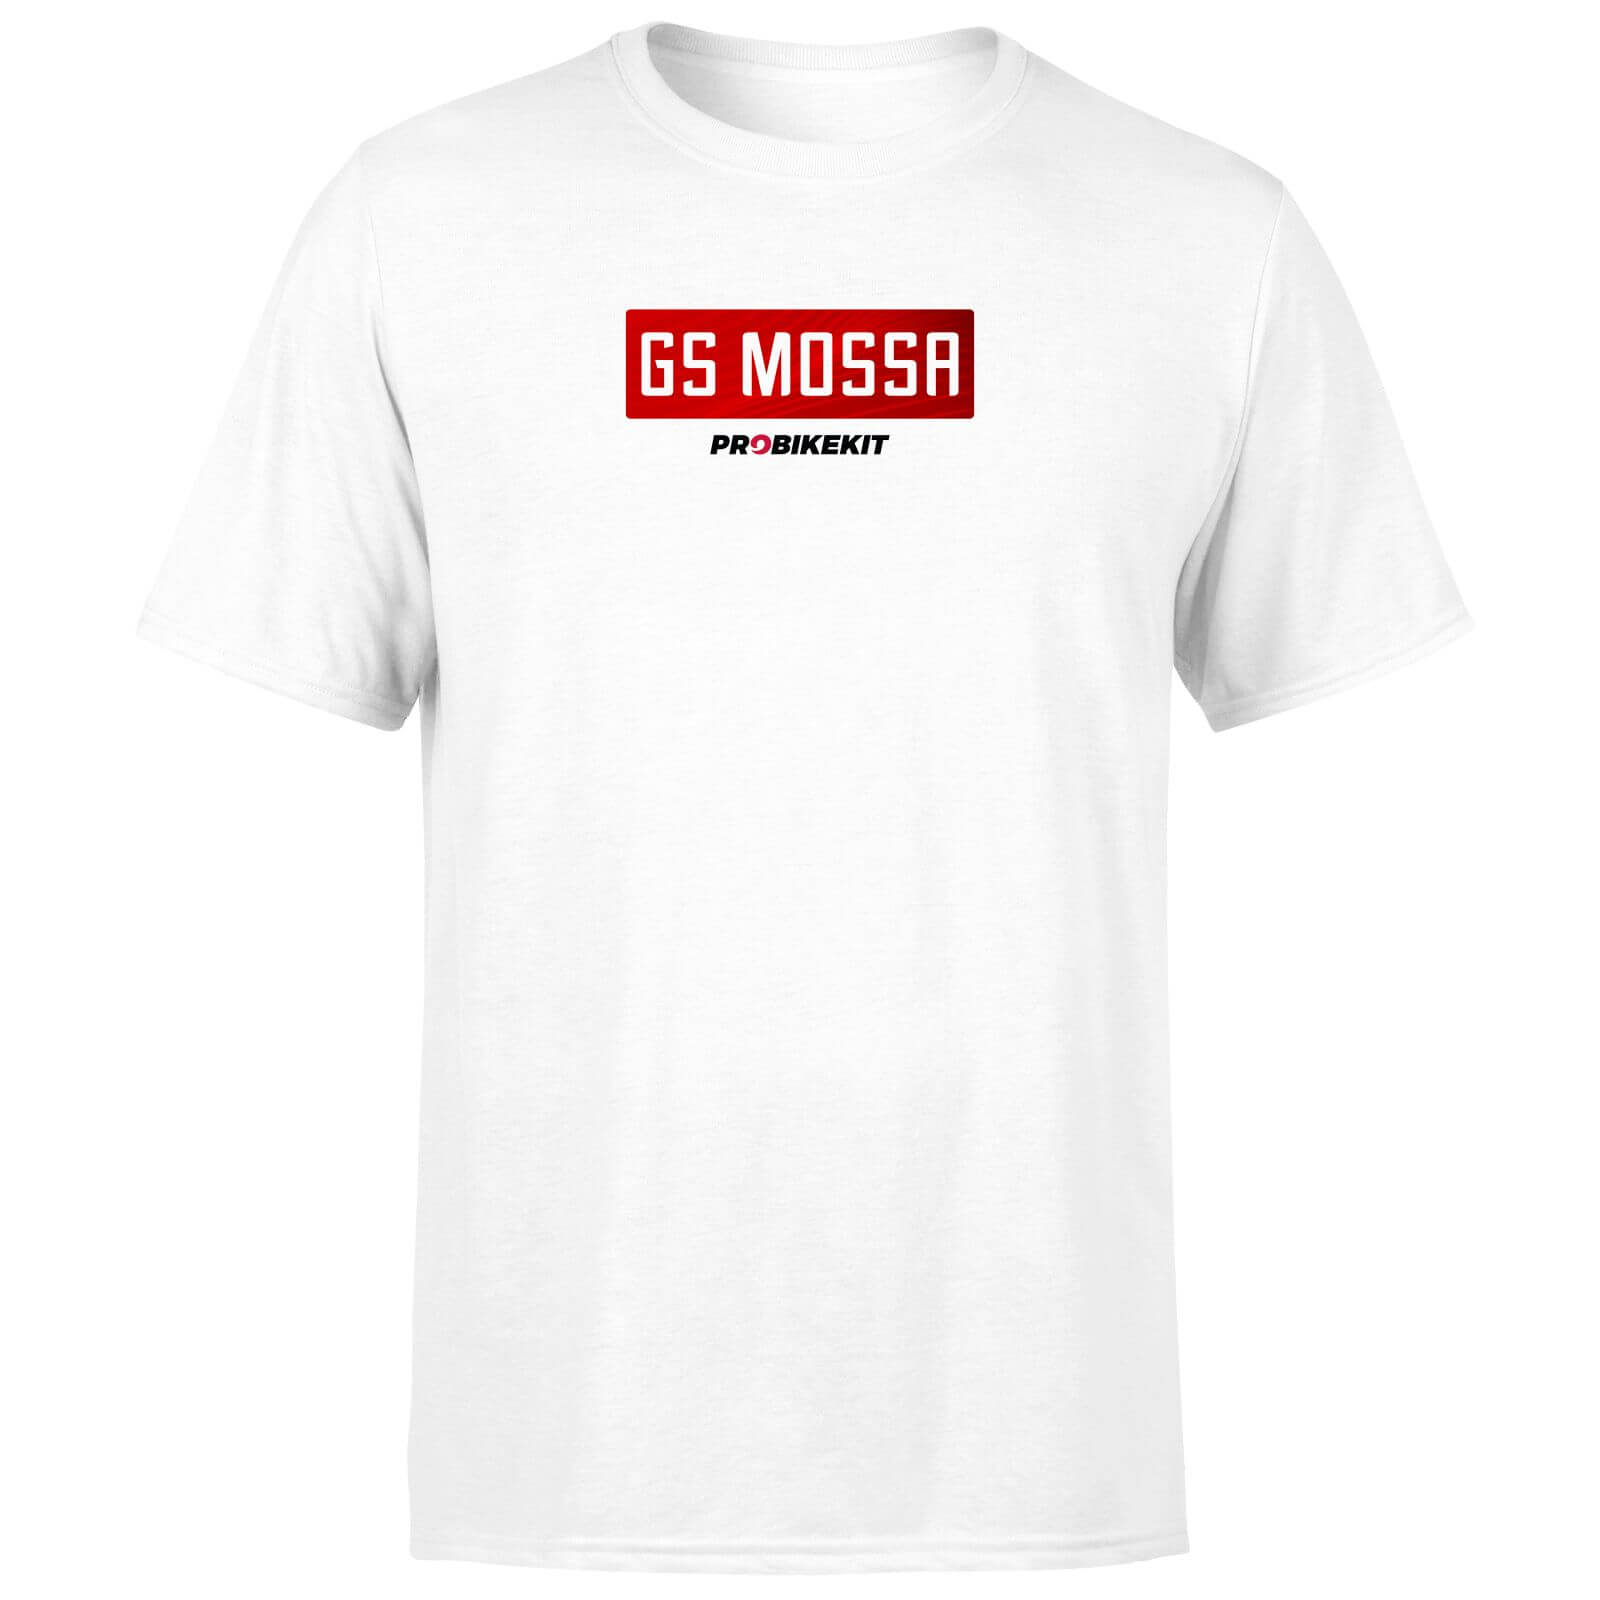 PBK GS Mossa Boxed Chest Logo Men's T-Shirt - White - 3XL - White